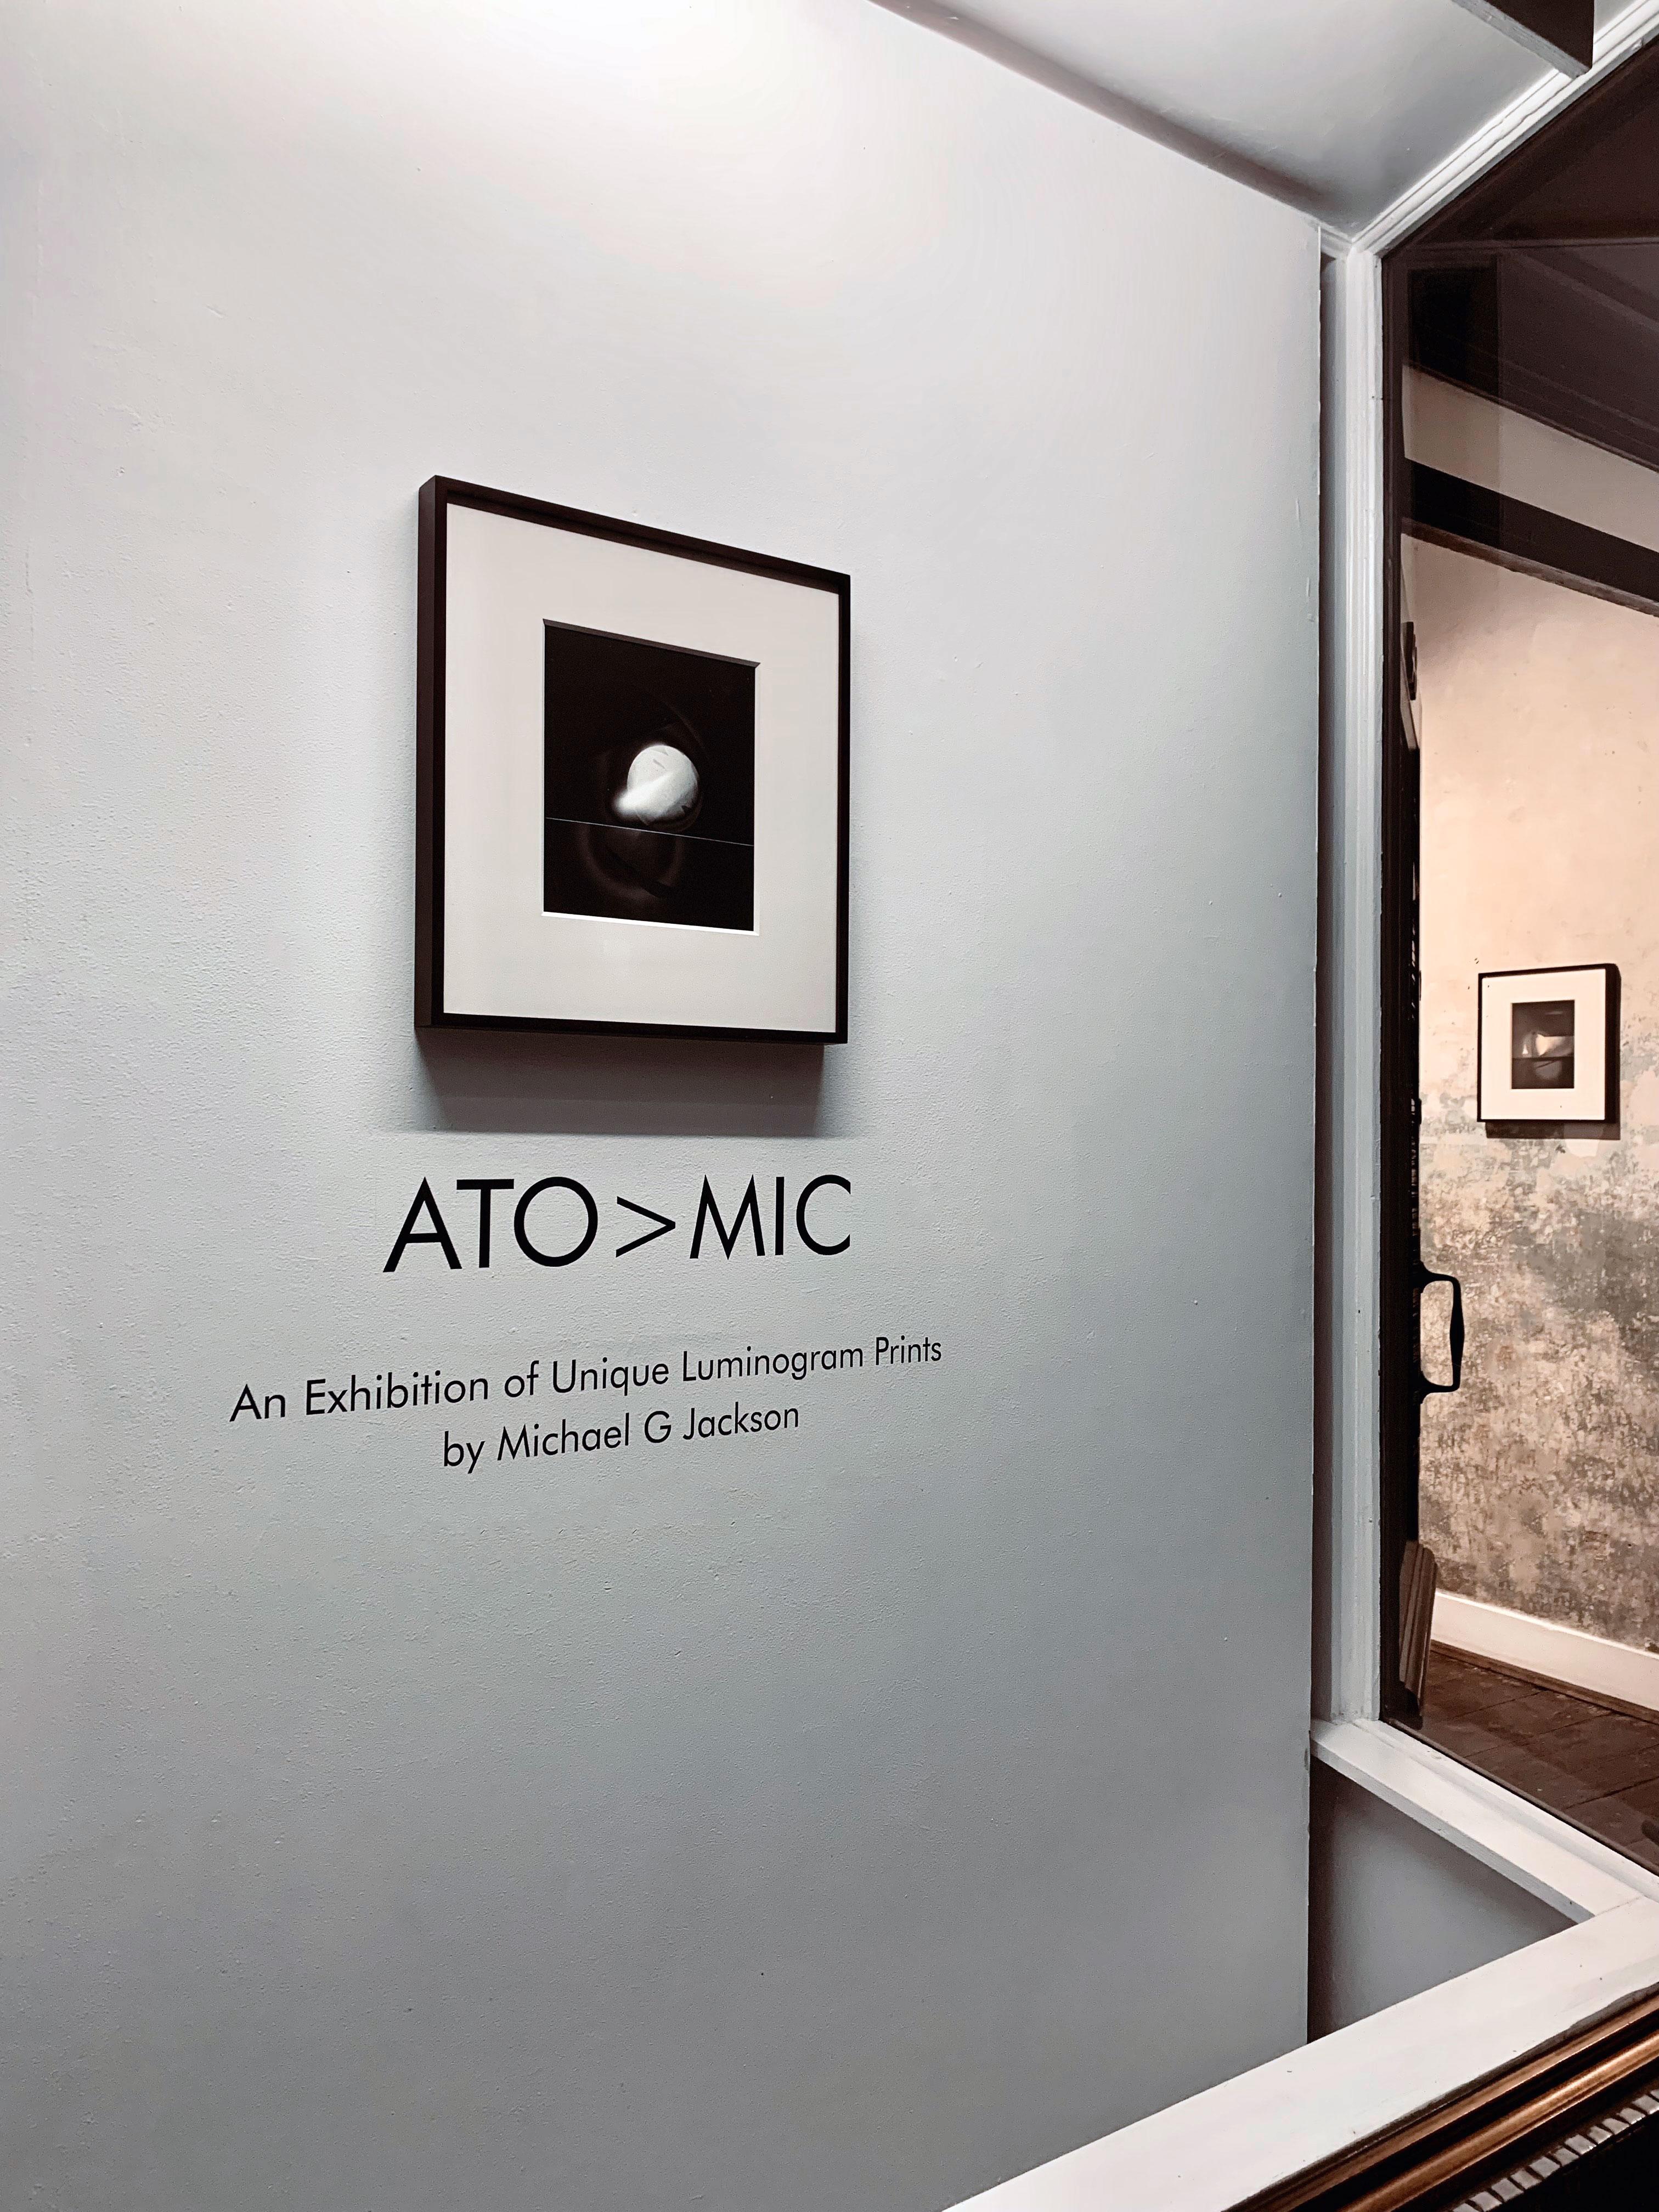 ATO>MIC #9, Einzigartiger silberner Luminogrammdruck, „Atomischer Druck wie Explosion oder Mondlandschaft“ (Geometrische Abstraktion), Photograph, von Michael G Jackson 